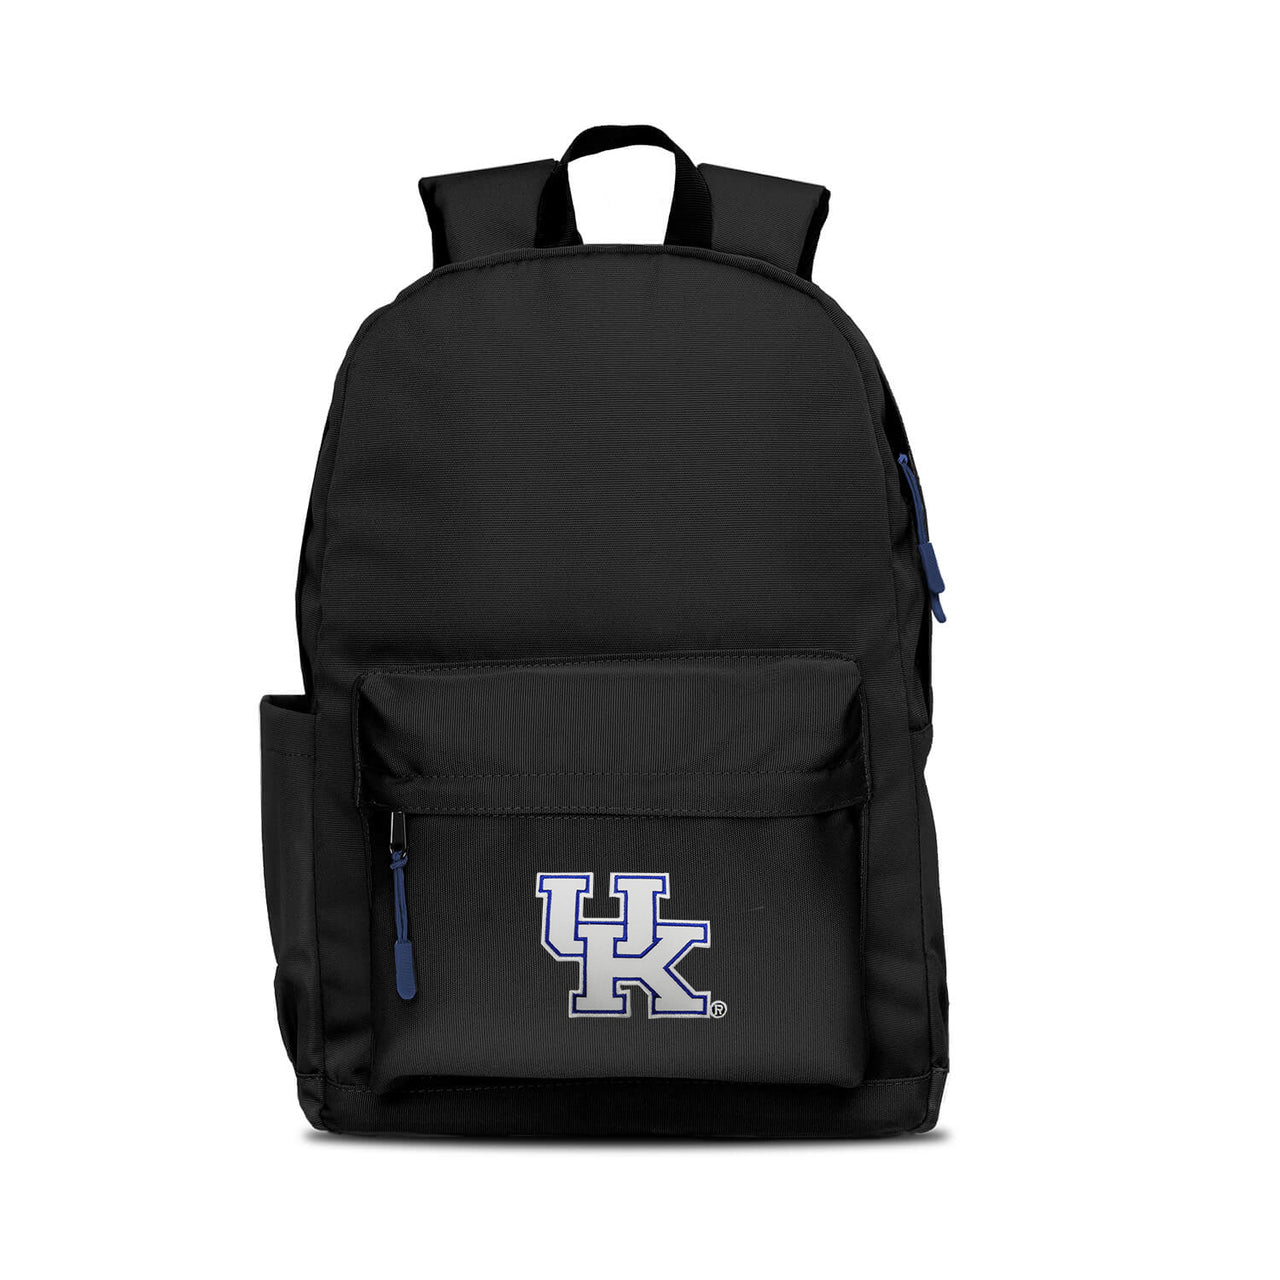 Kentucky Wildcats Campus Laptop Backpack- Black